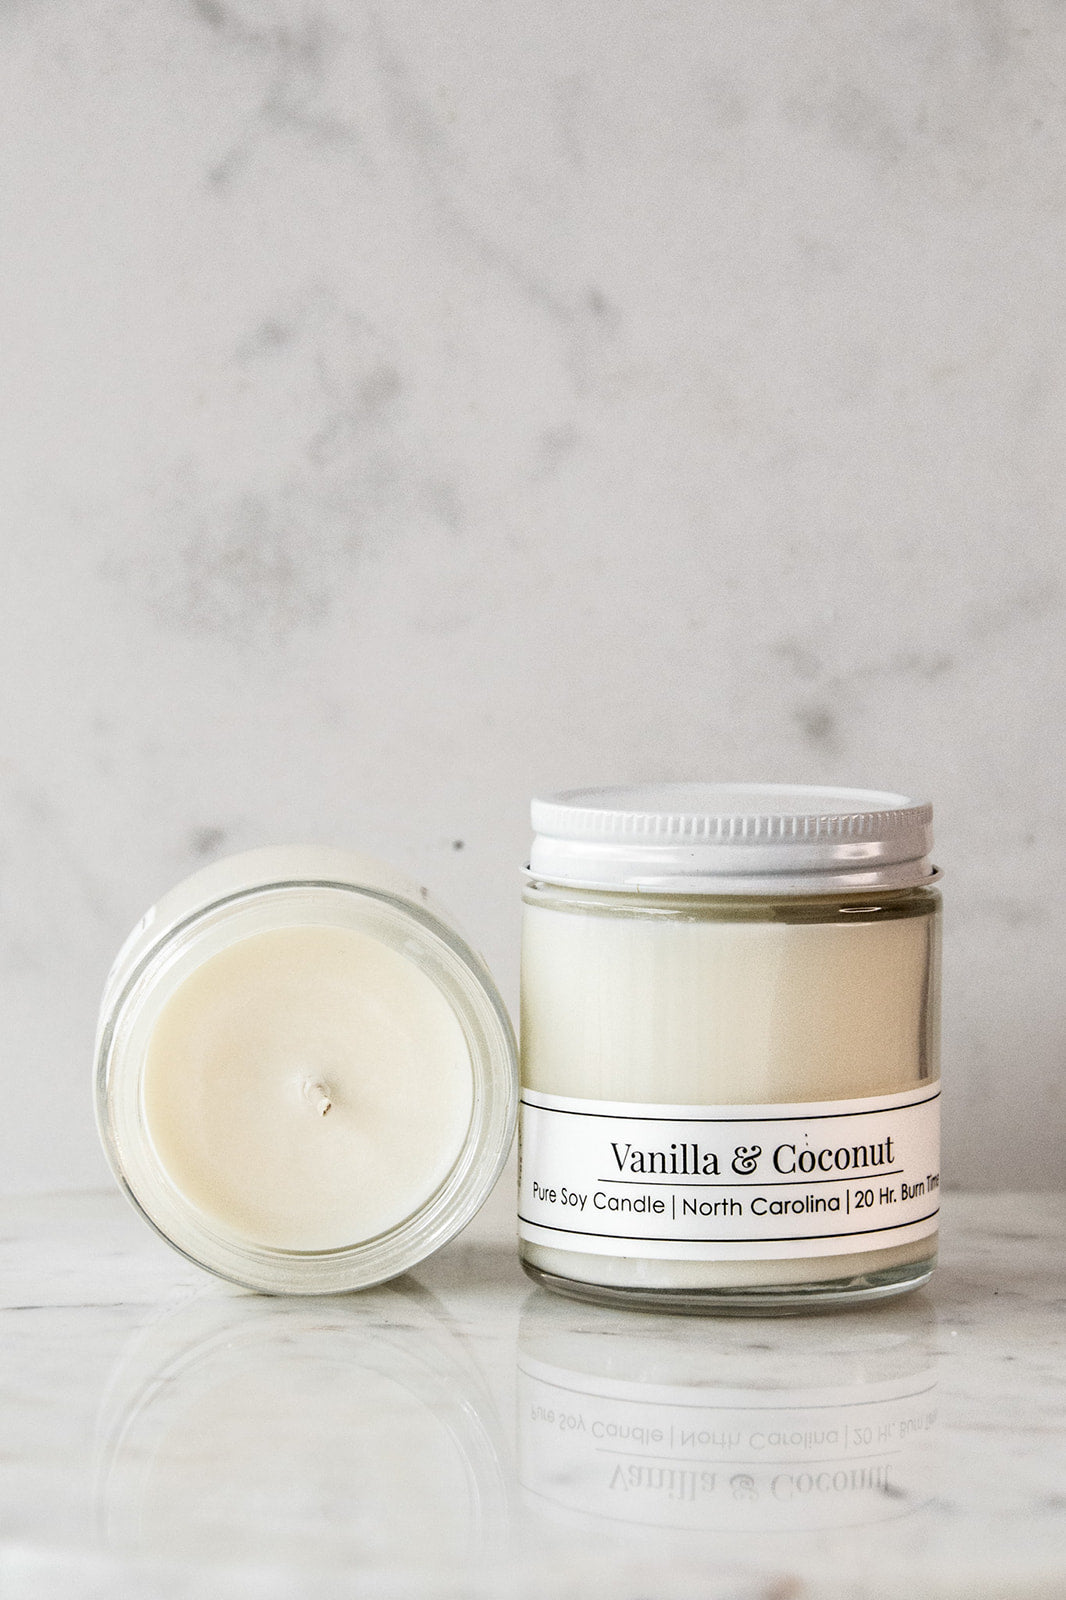 Vanilla & Coconut 4 oz Candle